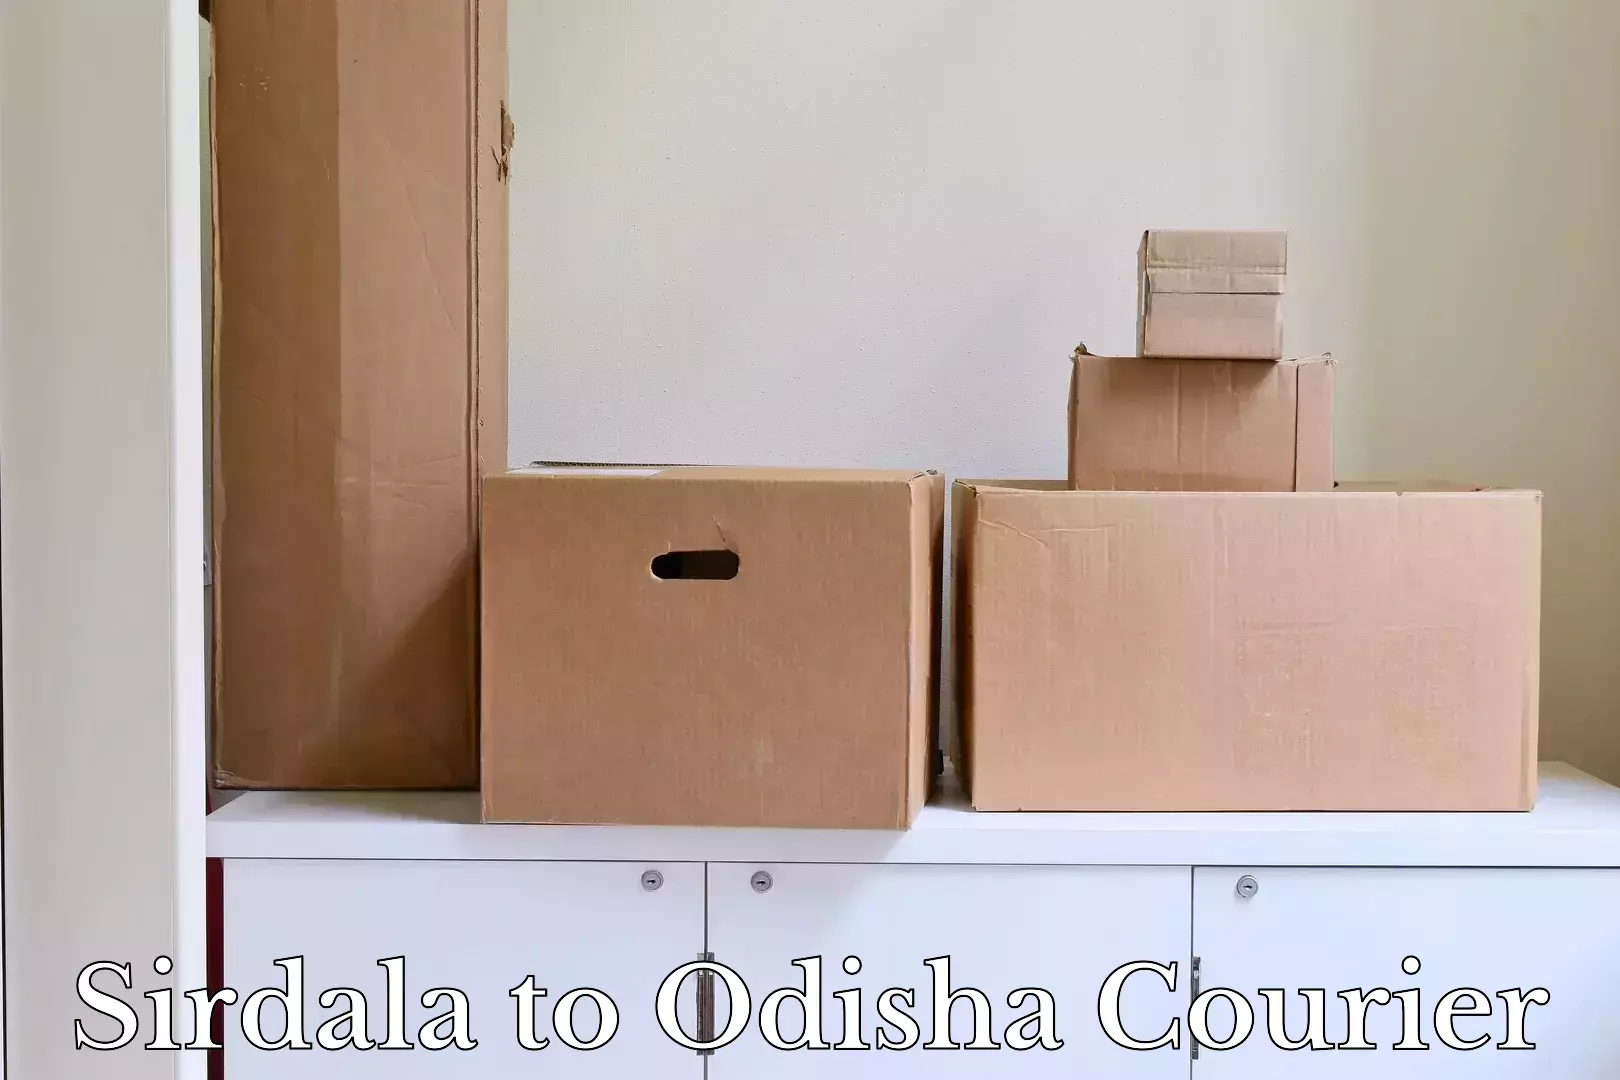 Luggage transport guidelines Sirdala to Odisha